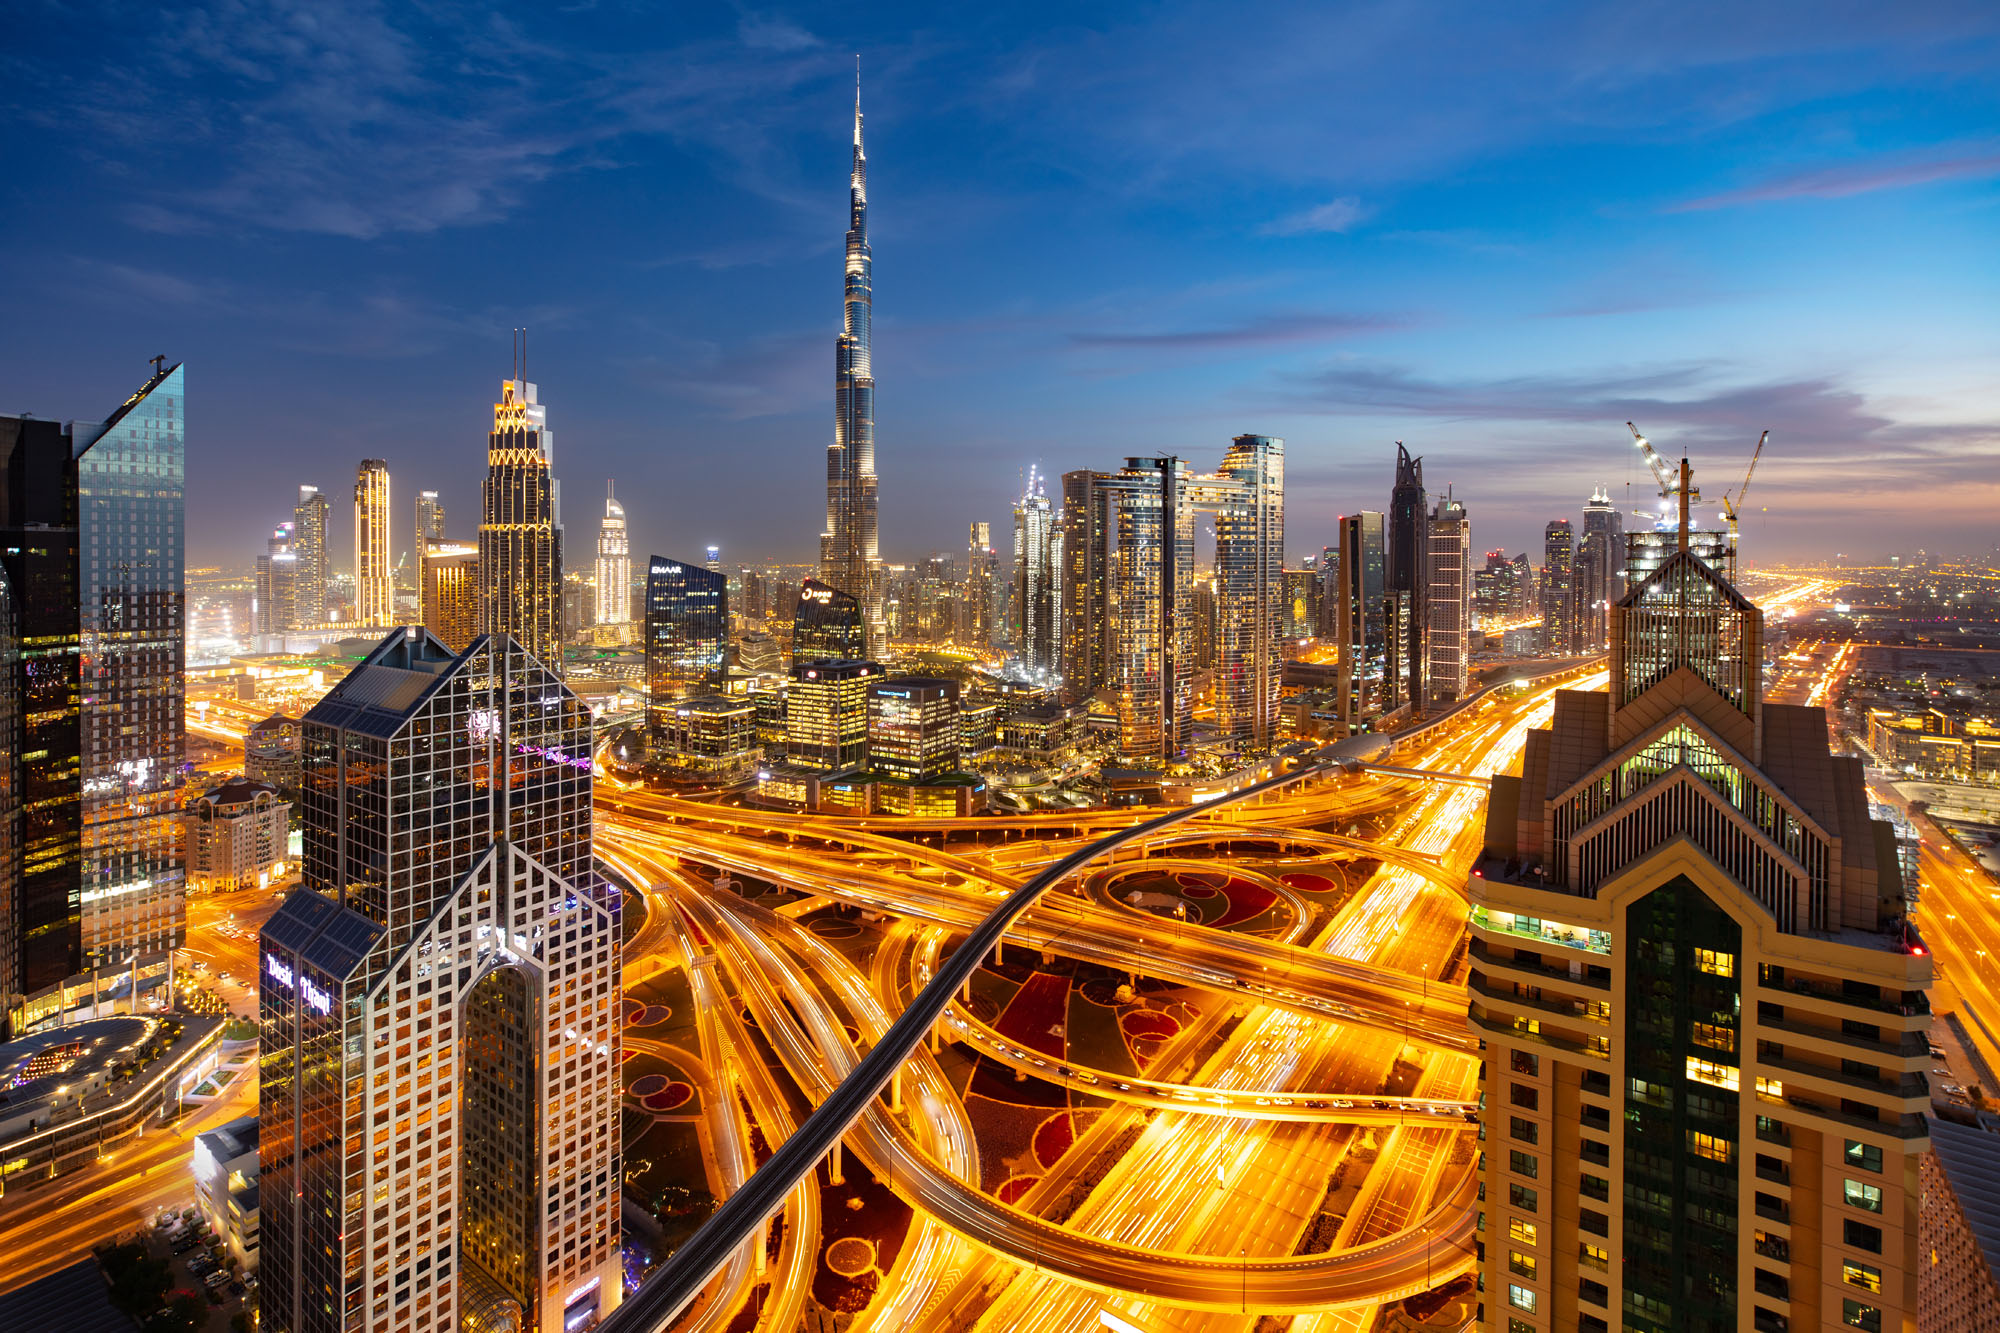 La skyline de Dubaï à l'heure bleue vue depuis l'hôtel shangri-la. Burj Khalifa au loin et filés de voitures au premier plan.